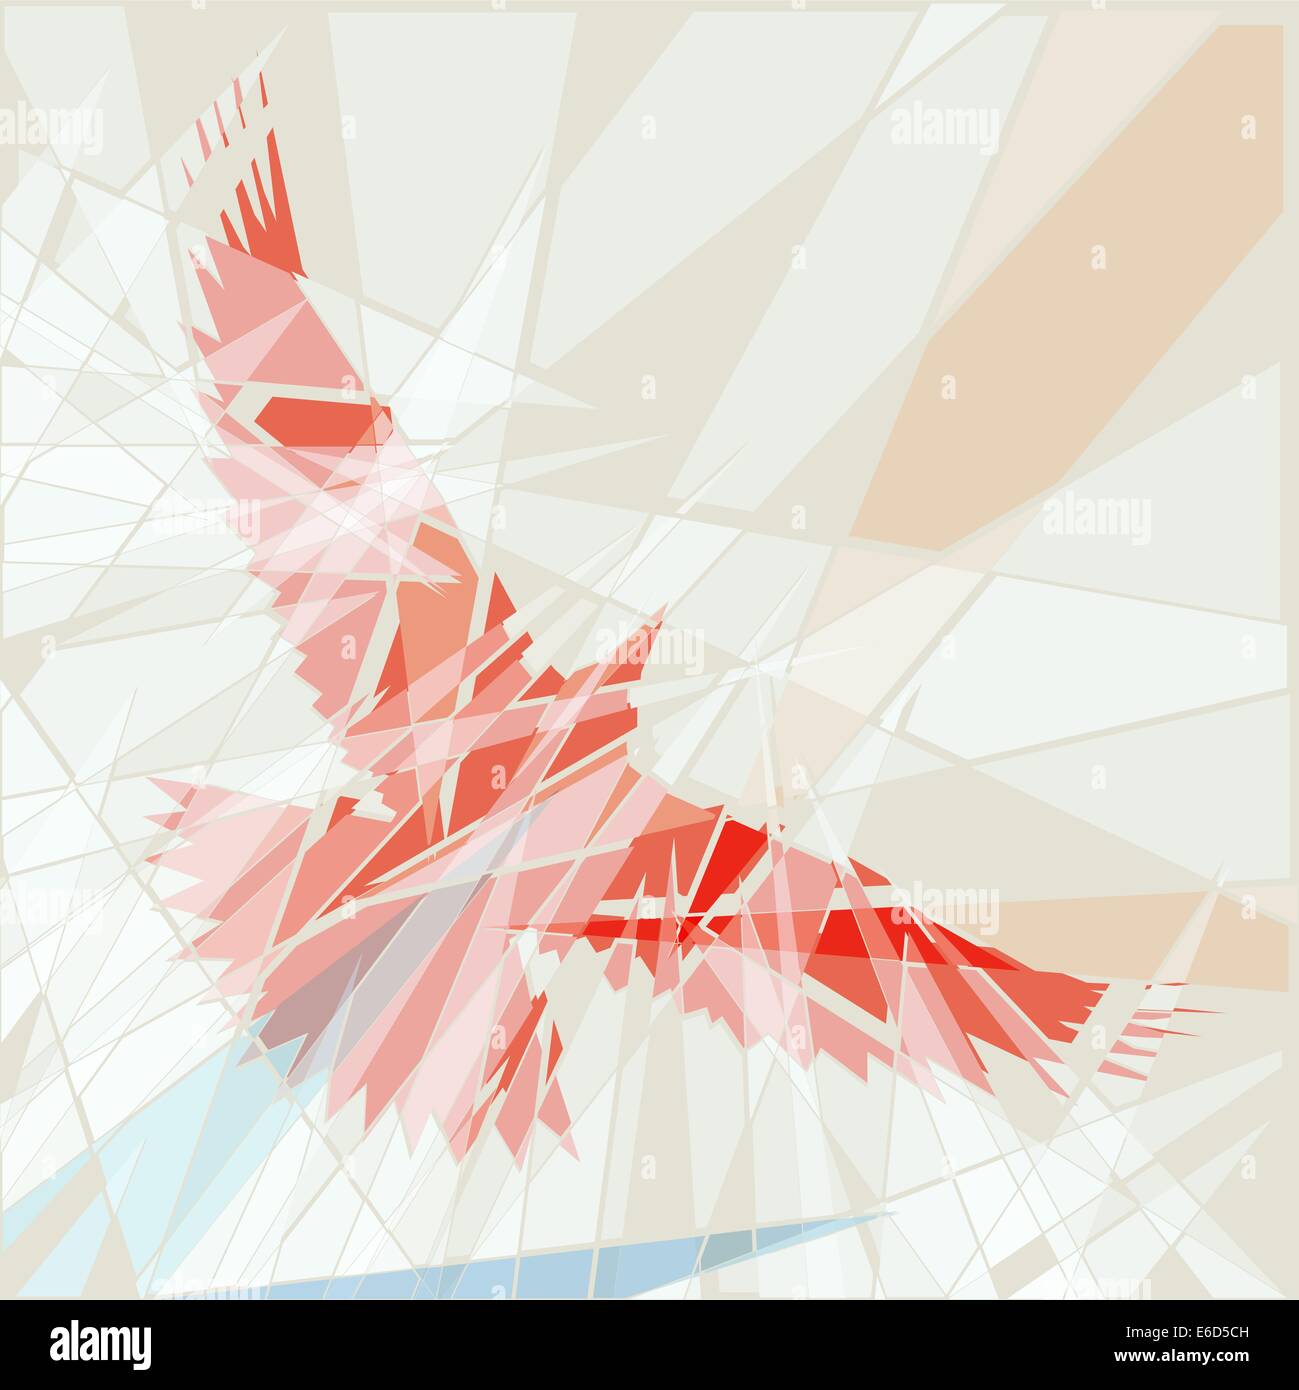 Bearbeitbares Vektor-Illustration eines fliegenden roten Vogels als ob durch das zerbrochene Glas gesehen Stock Vektor